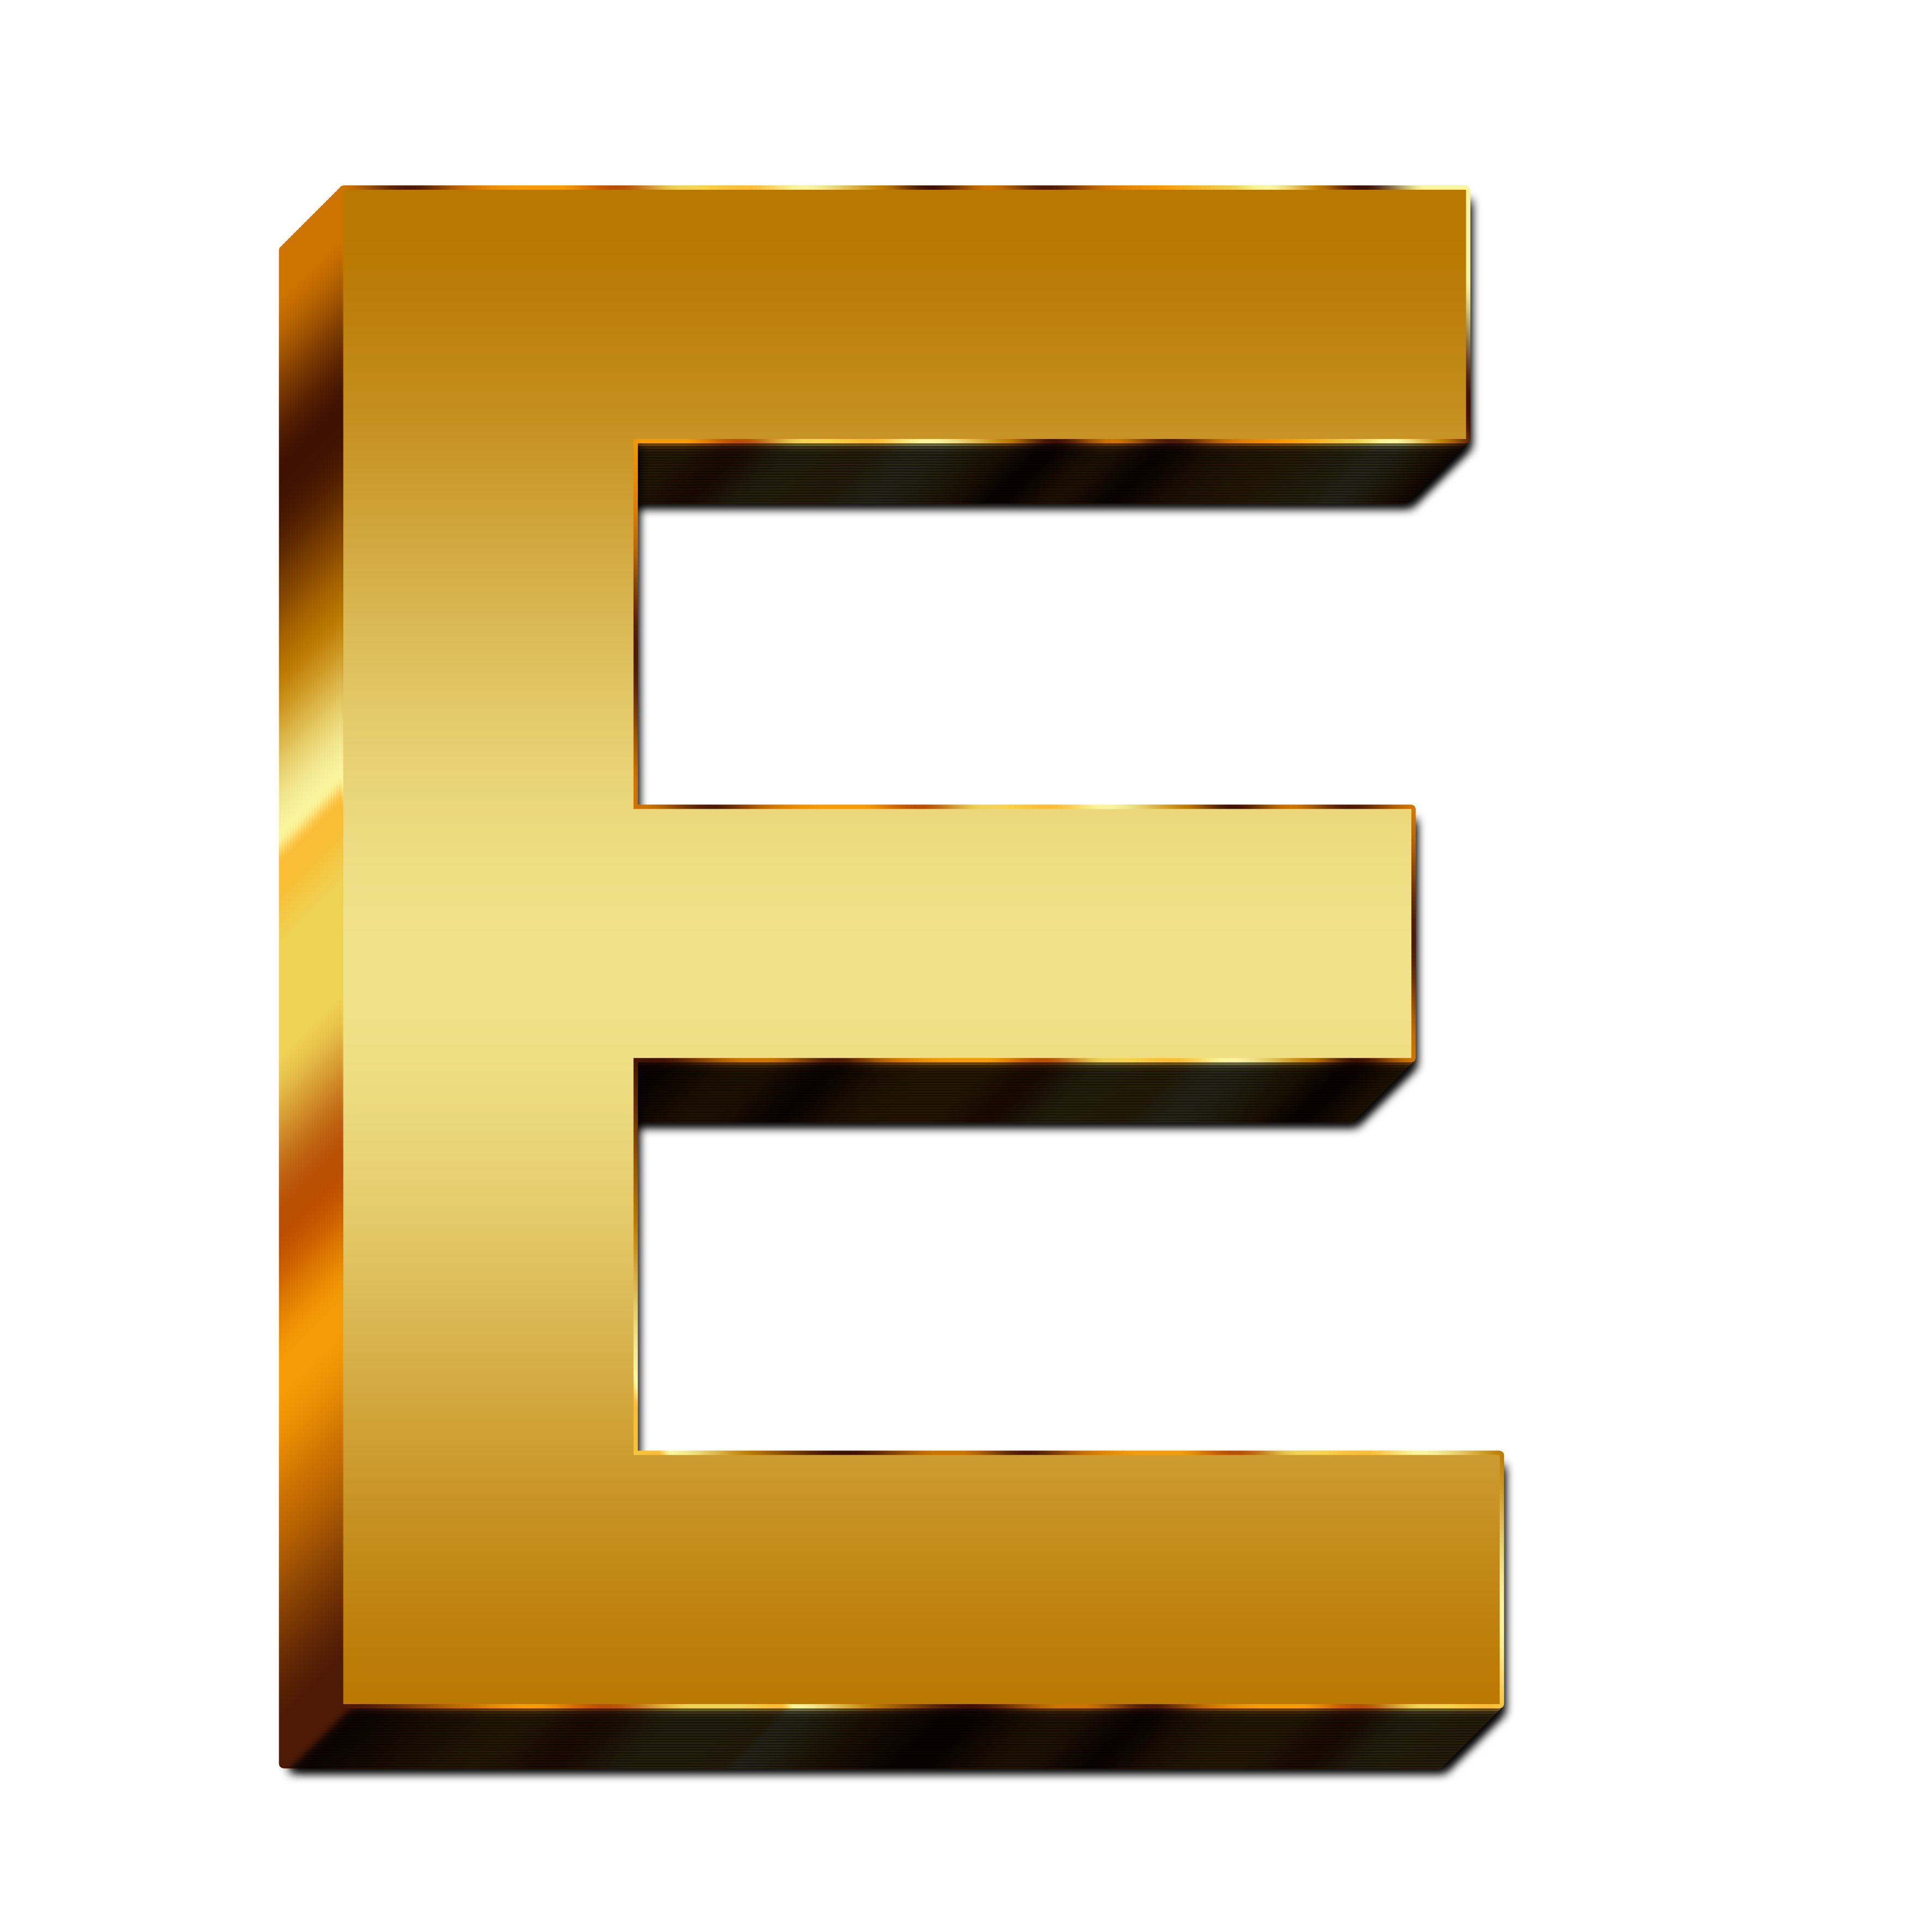 Изображения буквы е. Буквы без фона. Буква e. Объемная буква е. Золотая буква е.